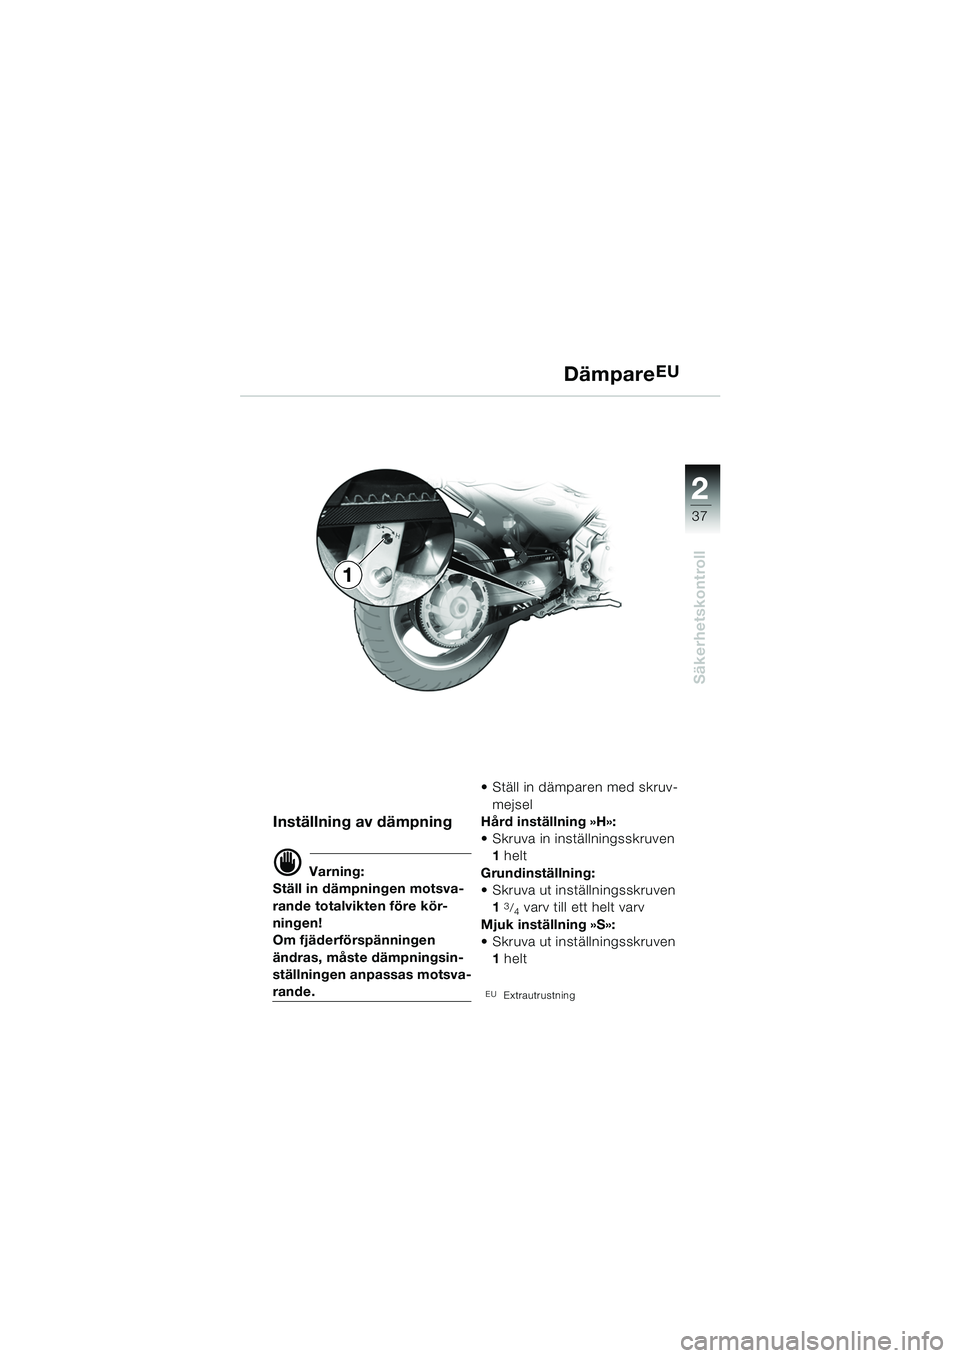 BMW MOTORRAD F 650 CS 2003  Instruktionsbok (in Swedish) 1
37
Säkerhetskontroll
2
DämpareEU
Inställning av dämpning
d Varning:
Ställ in dämpningen motsva-
rande totalvikten före kör-
ningen!
Om fjäderförspänningen 
ändras, måste dämpningsin-
s